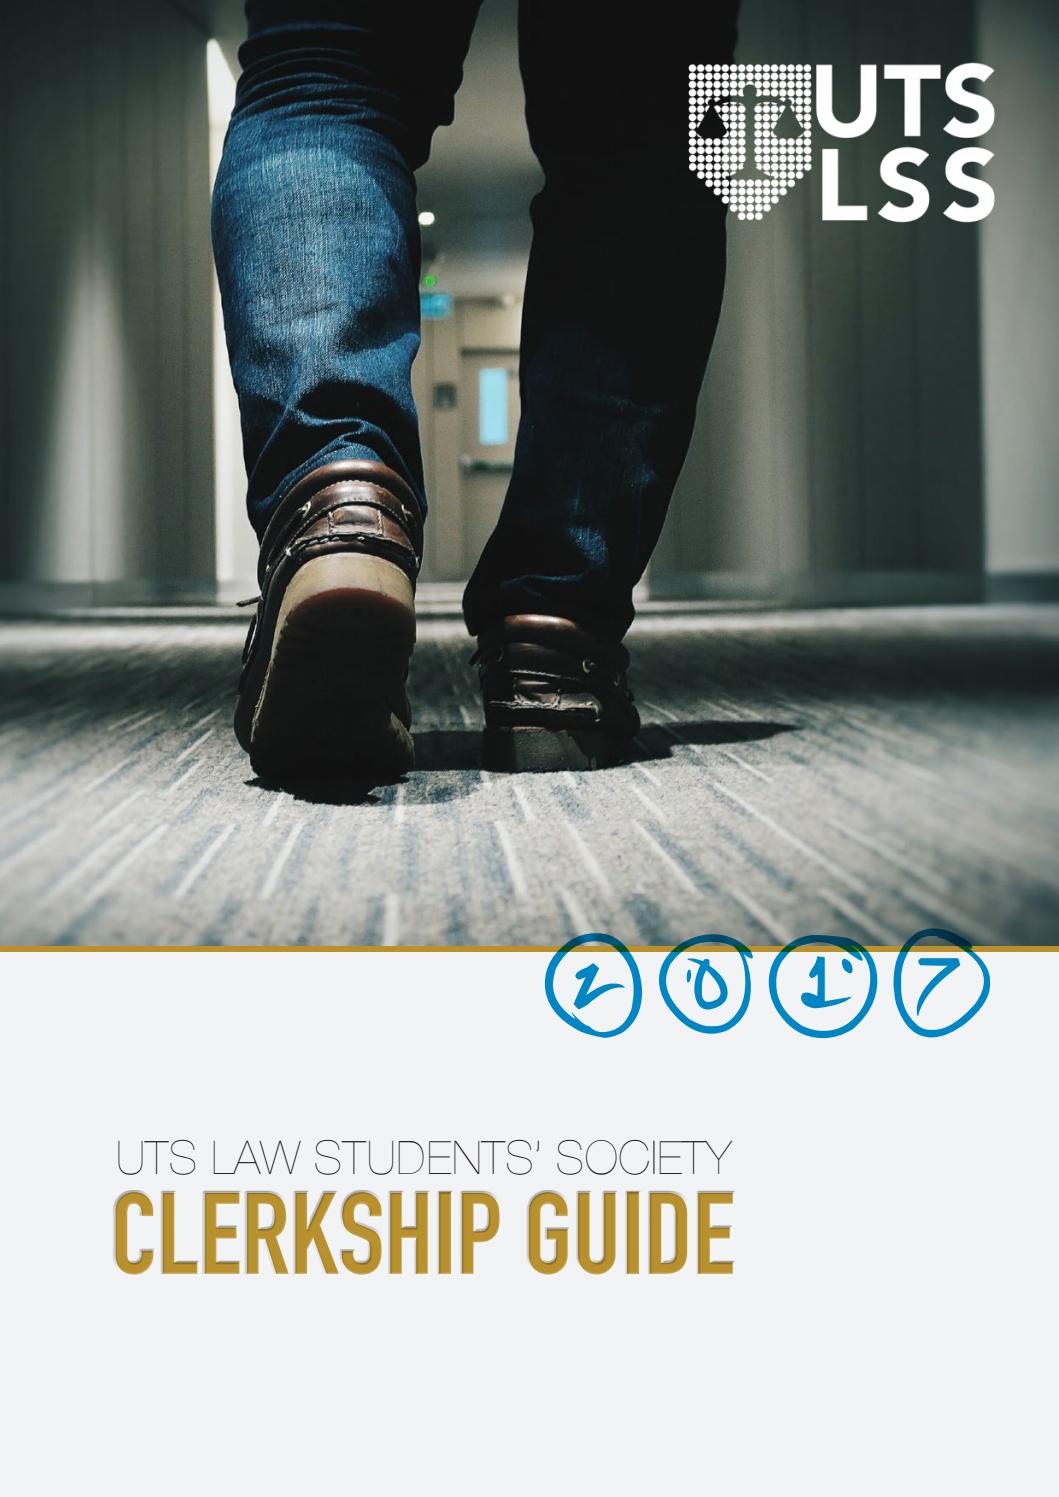 Monash lss clerkship guide 2017